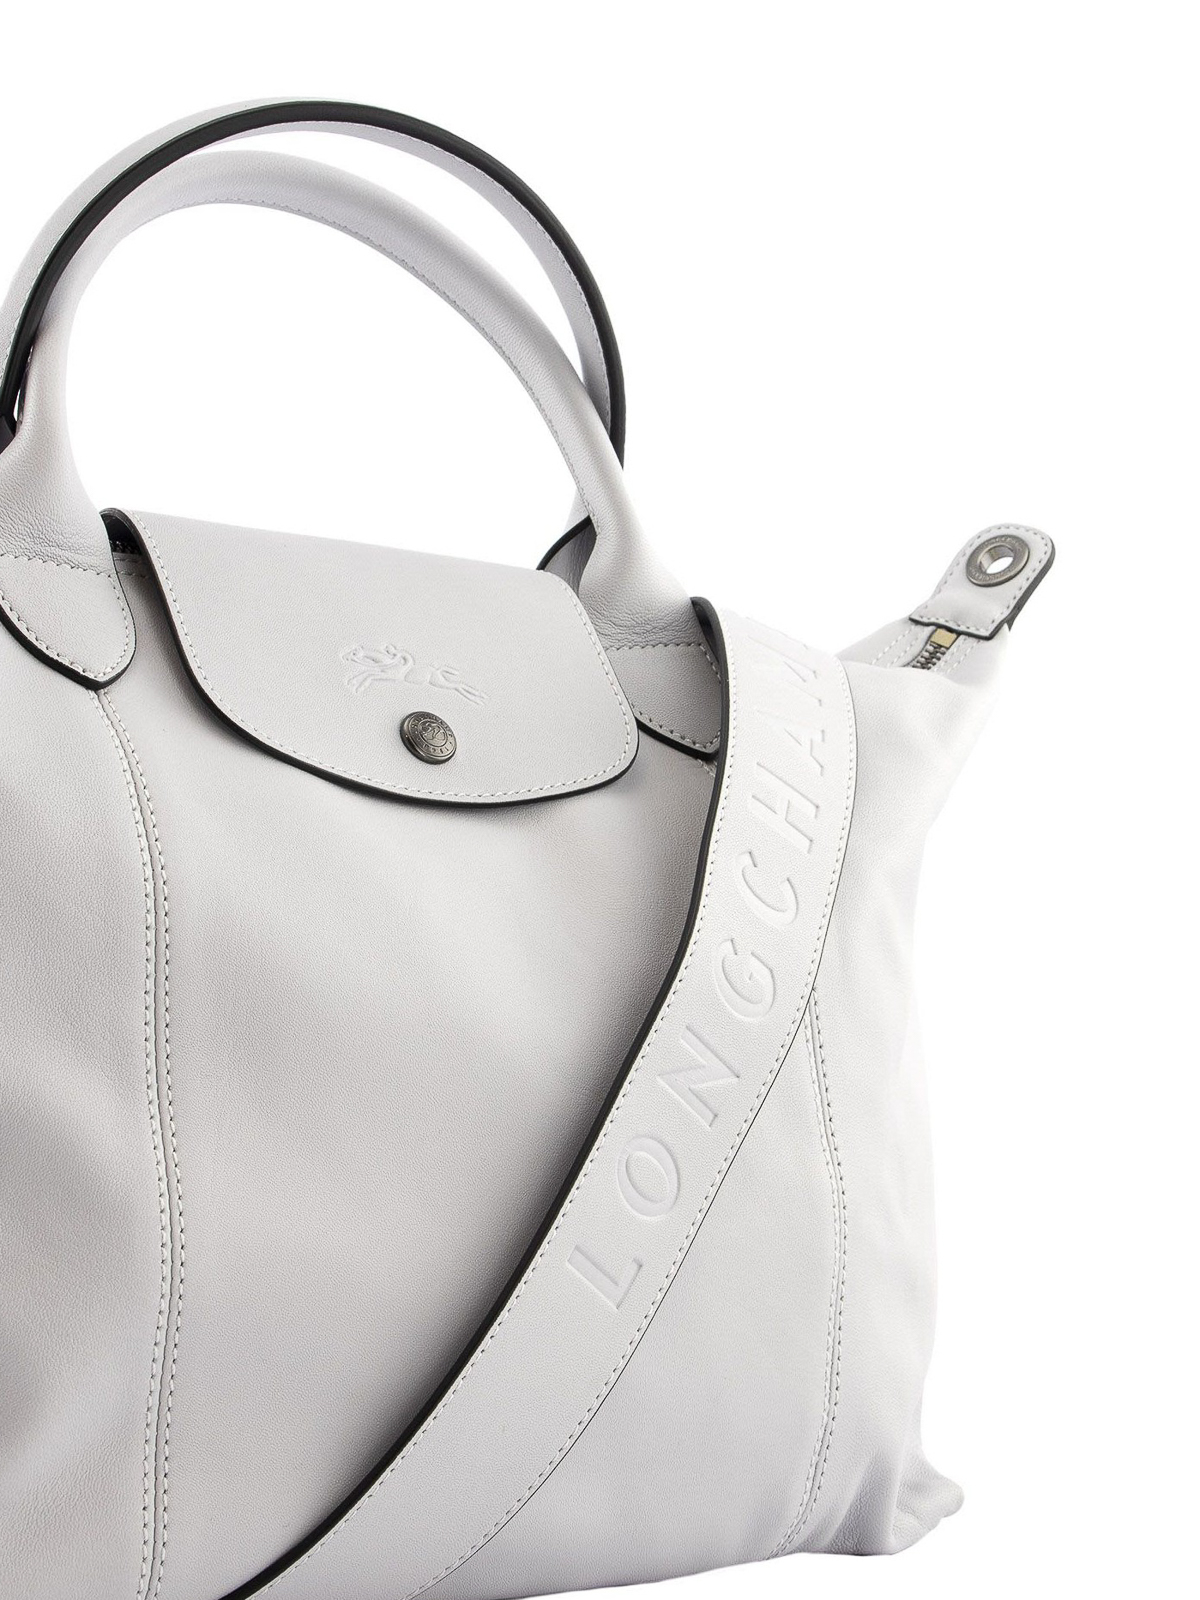 Longchamp Le Pliage Cuir Top Handle Bag in Gray